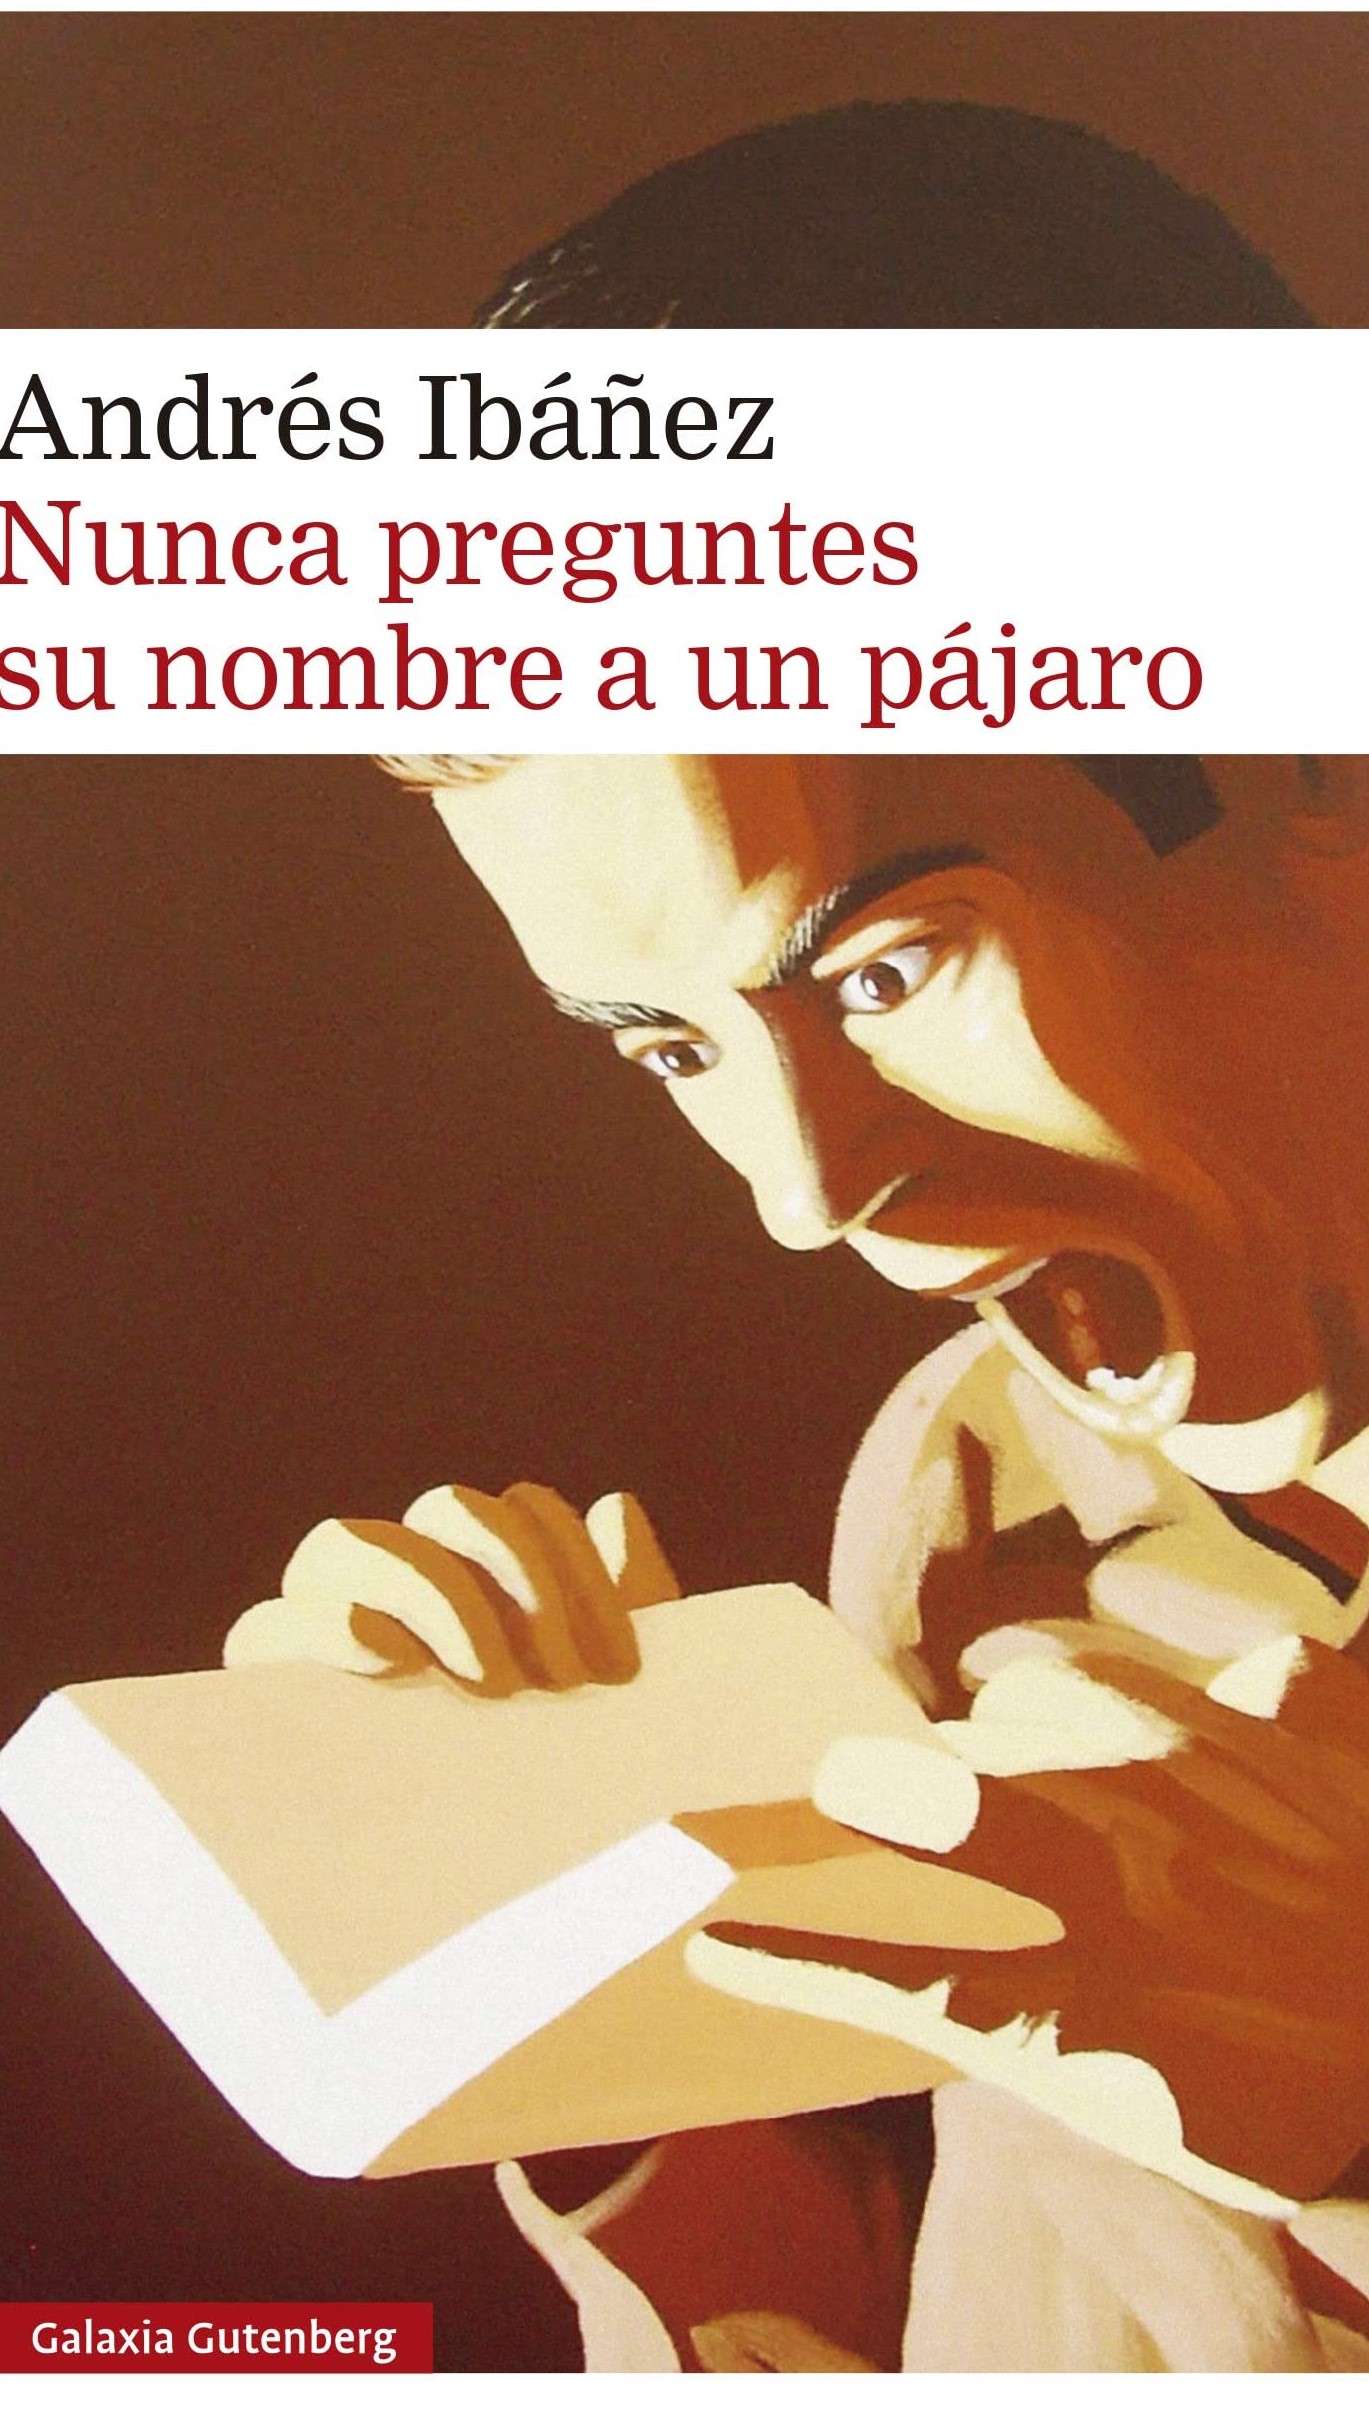 Andrés Ibáñez: “Escribir es hacer aquello que creo que es imposible”